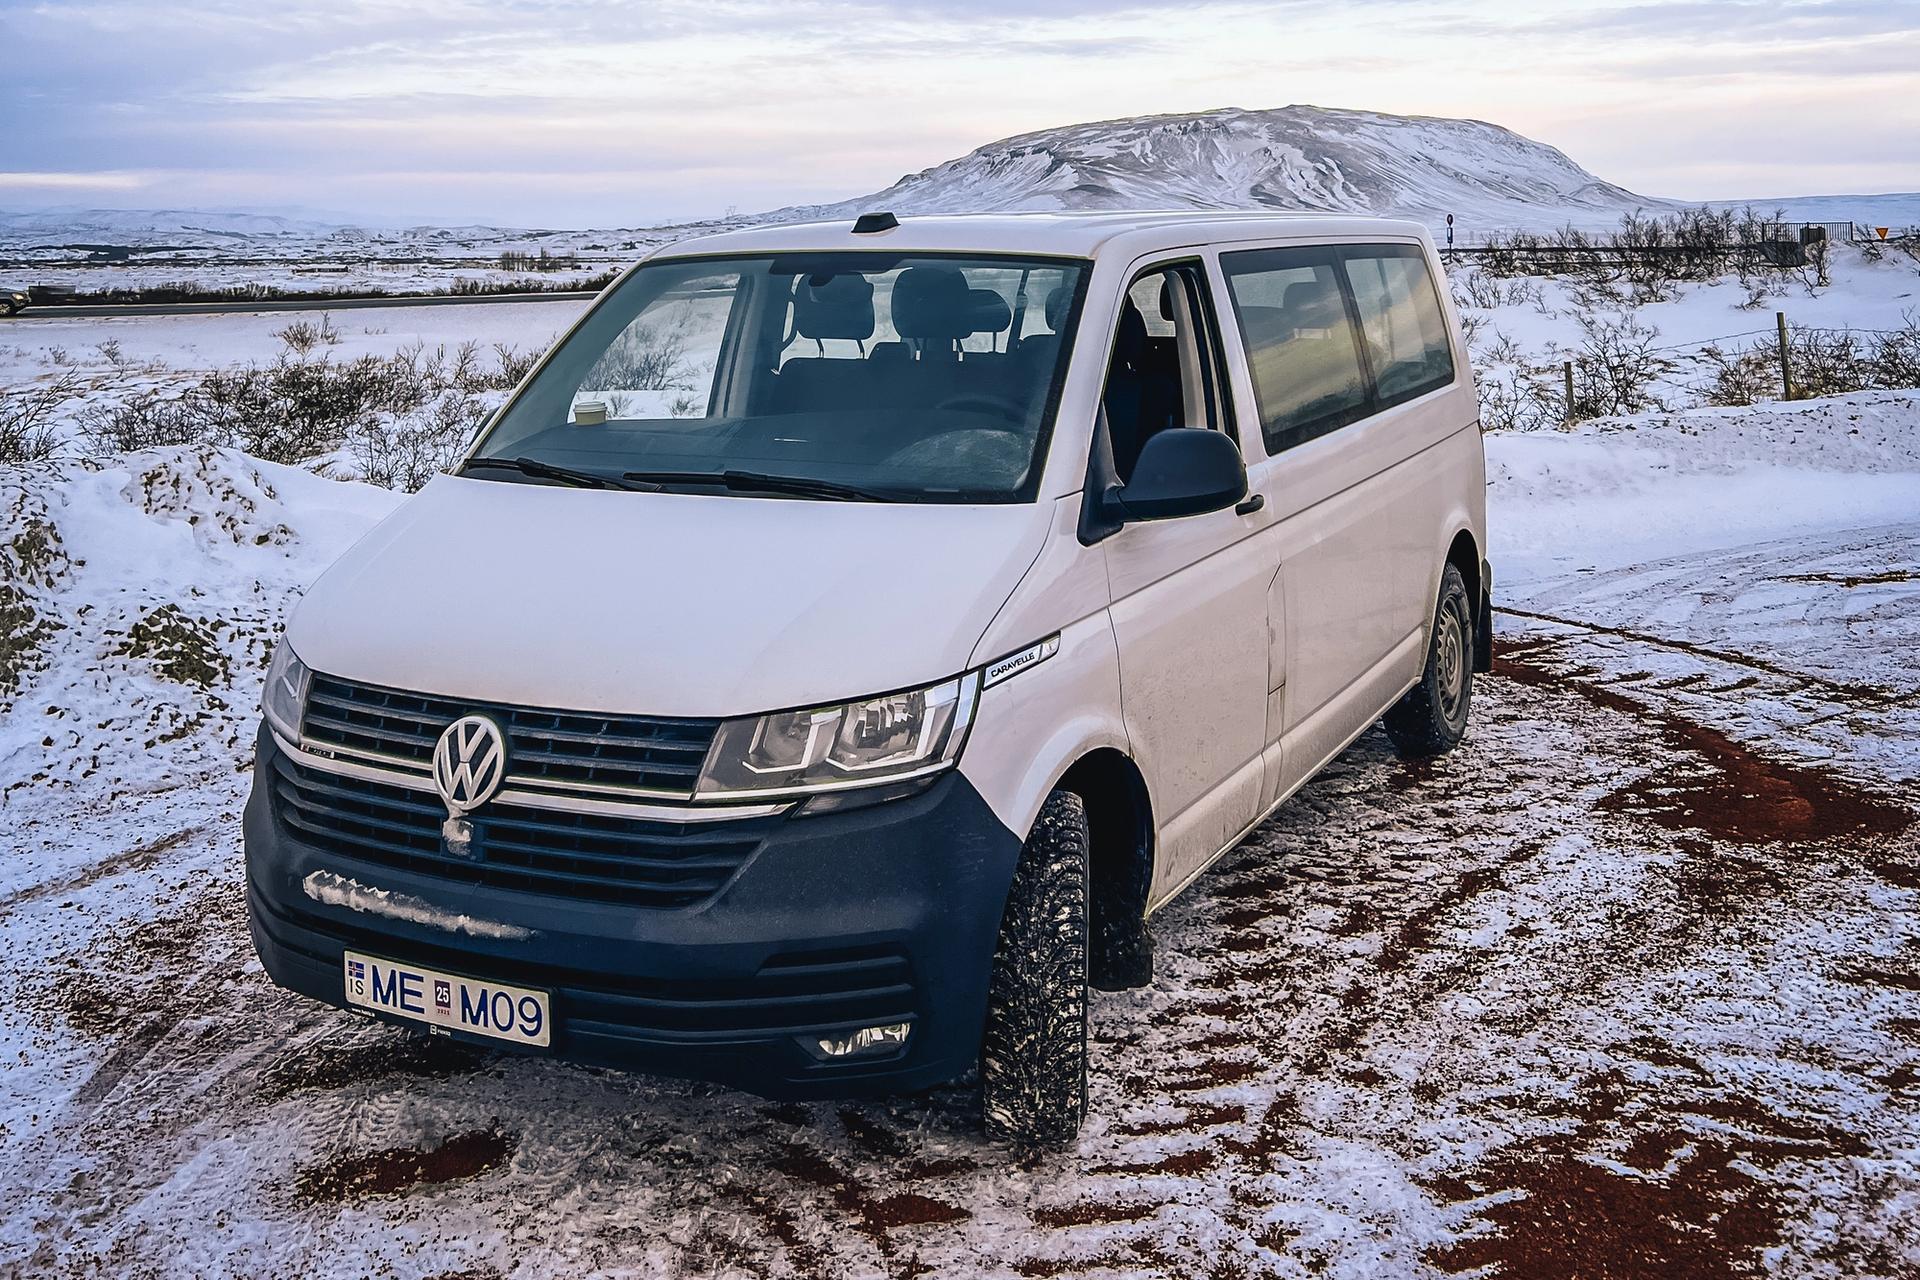 The Volkswagen minivan for 9 people in winter road of Iceland